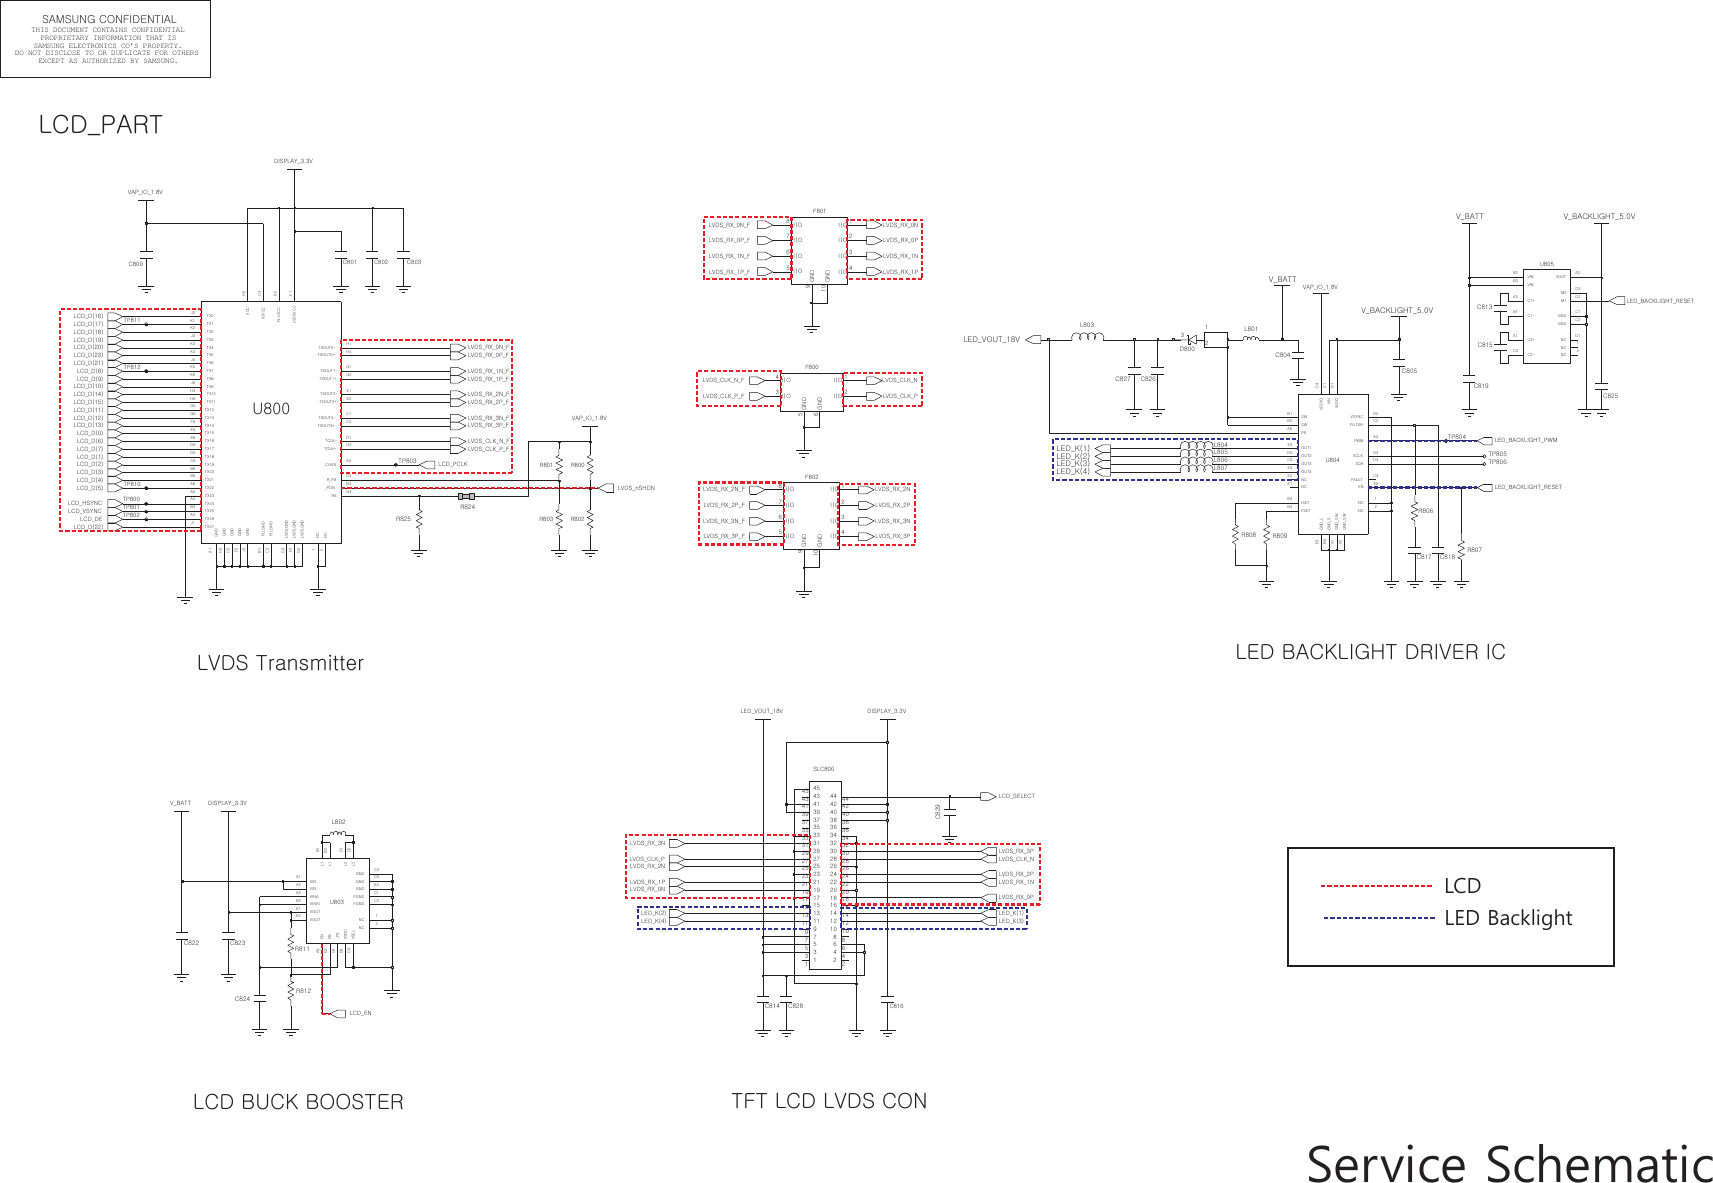 Page 8 of 10 - Samsung GT-P5100 - Schematics. Www.s-manuals.com. Service Schematics